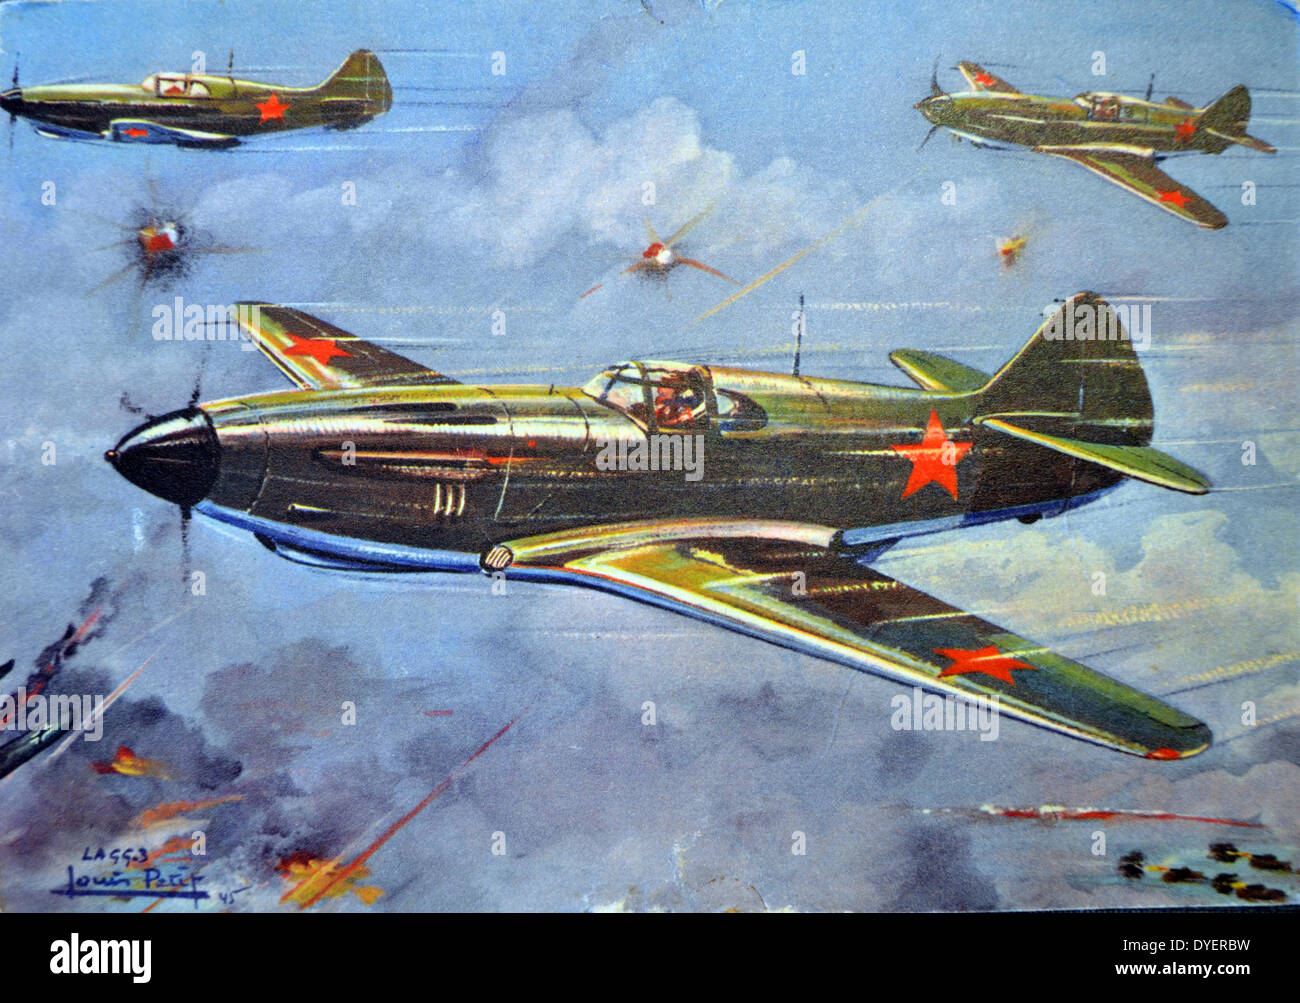 Die Lavochkin-Gorbunov - gudkow LaGG-3 sowjetische Kampfflugzeuge des Zweiten Weltkriegs. Es war eine Weiterentwicklung der früheren LaGG-1, und wurde zu einem der modernsten Flugzeuge für die sowjetischen Luftstreitkräfte zum Zeitpunkt der deutschen Invasion in 1941. Stockfoto